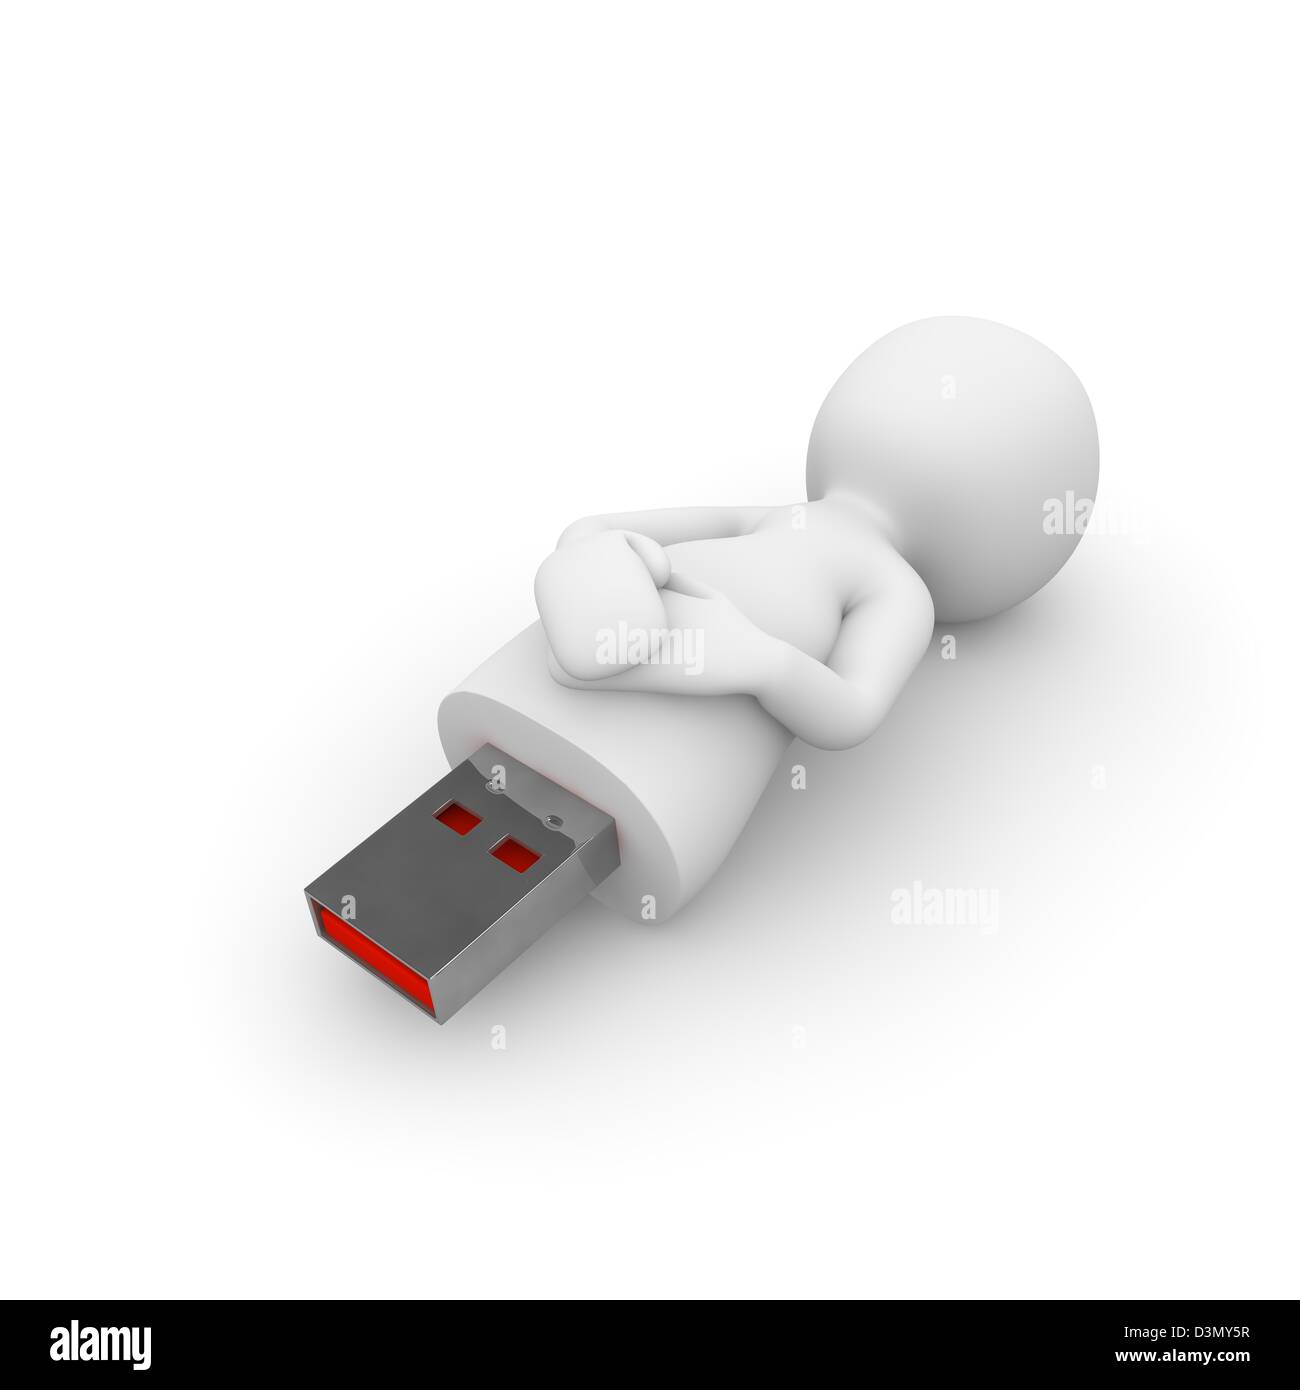 Ein USB Stick ist ein technisches Gerät zum speichern und verbreiten der Daten auf verschiedne Trägermedien. Stock Photo